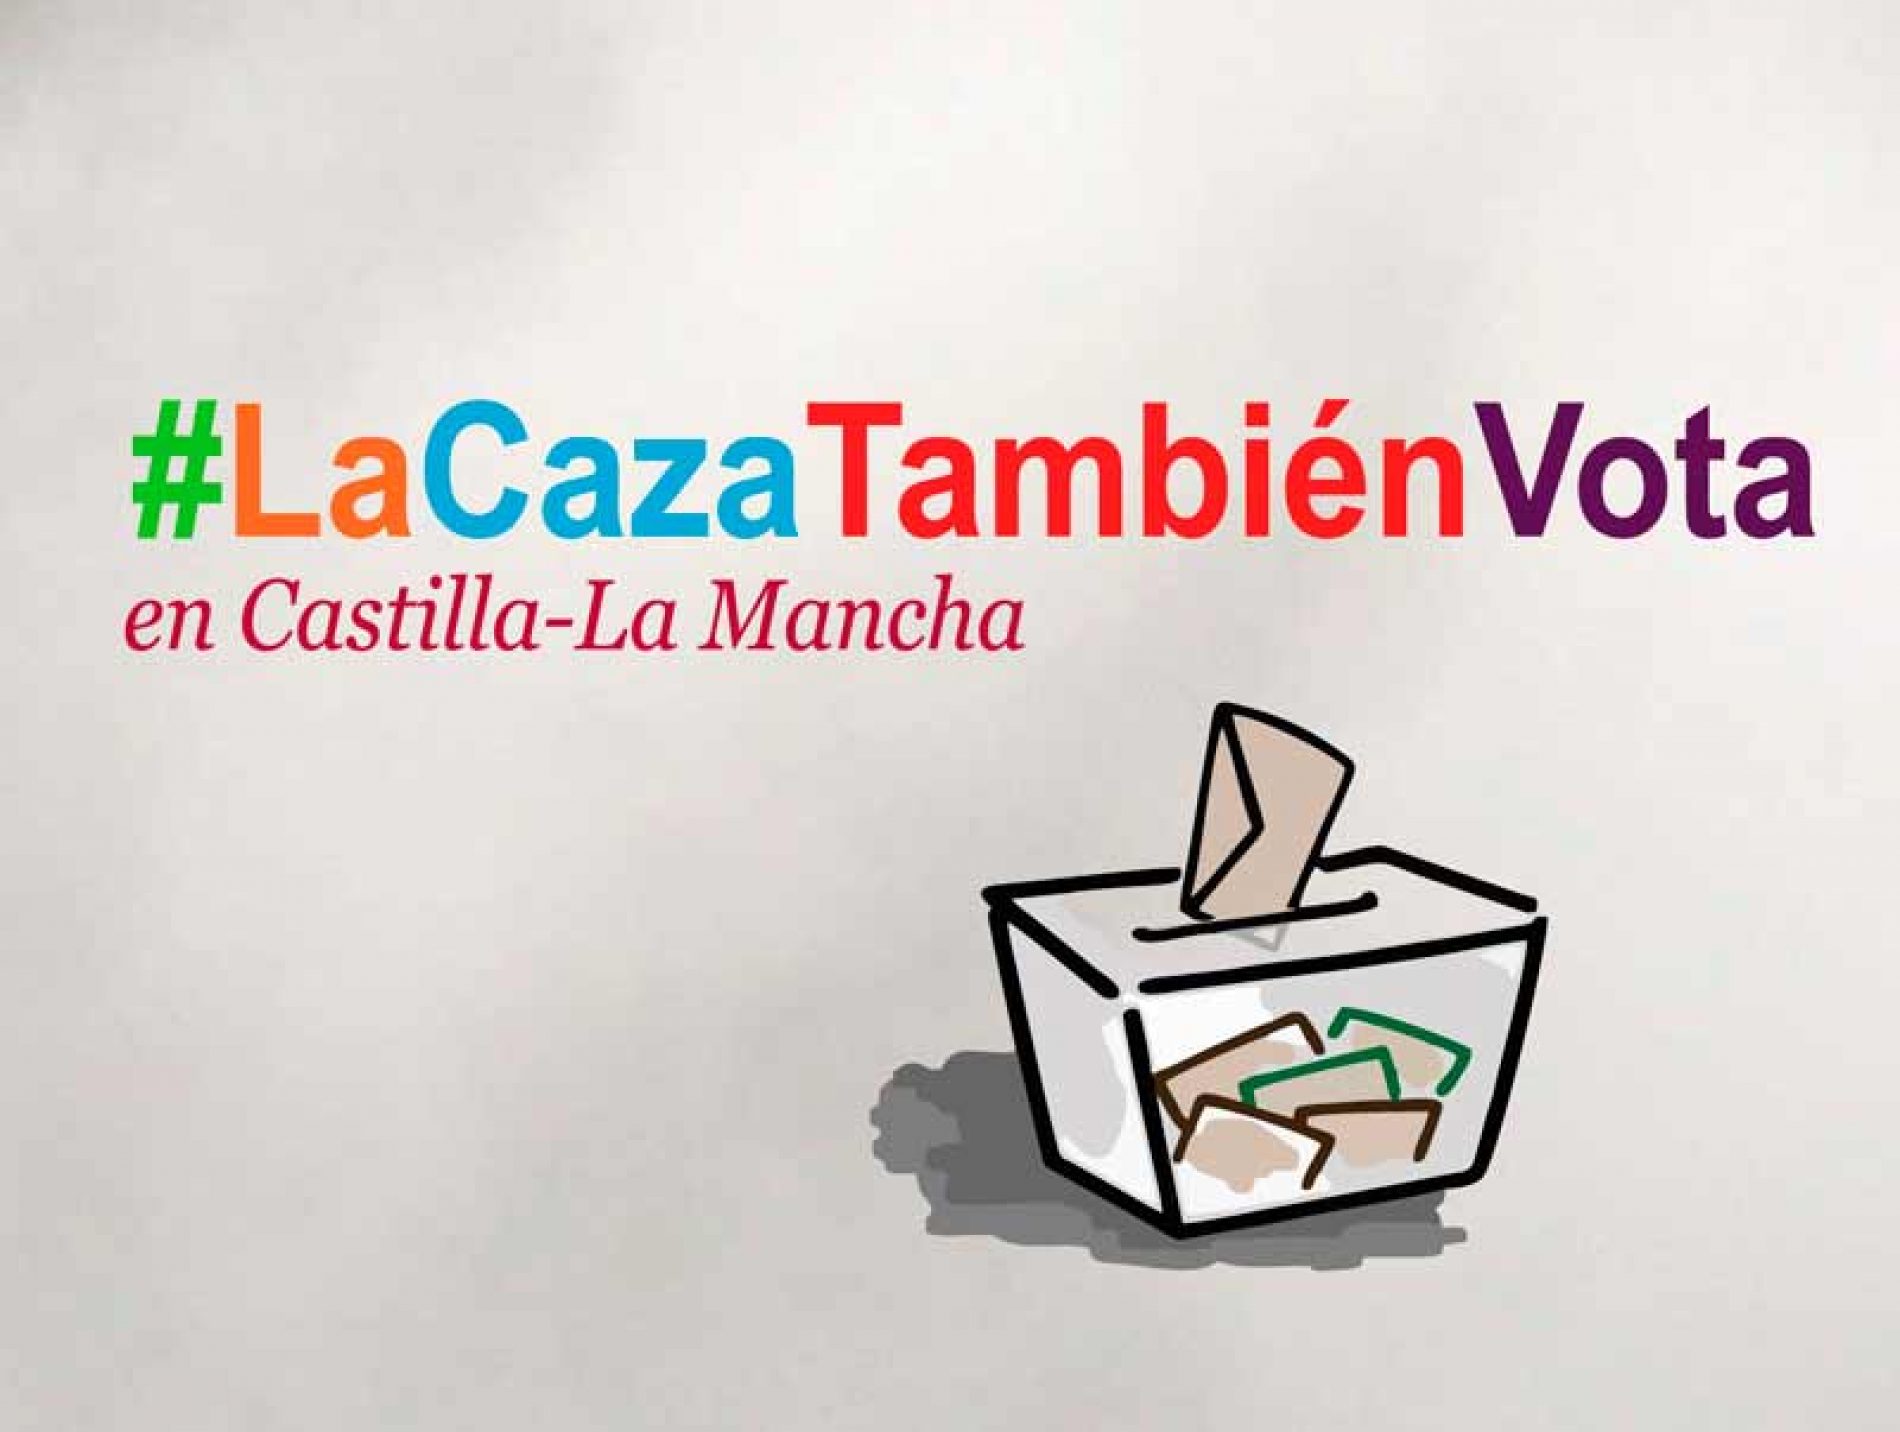 PSOE, PP, Ciudadanos y VOX firman su compromiso con la caza en el marco de la campaña #LaCazaTambiénVota en Castilla-La Mancha